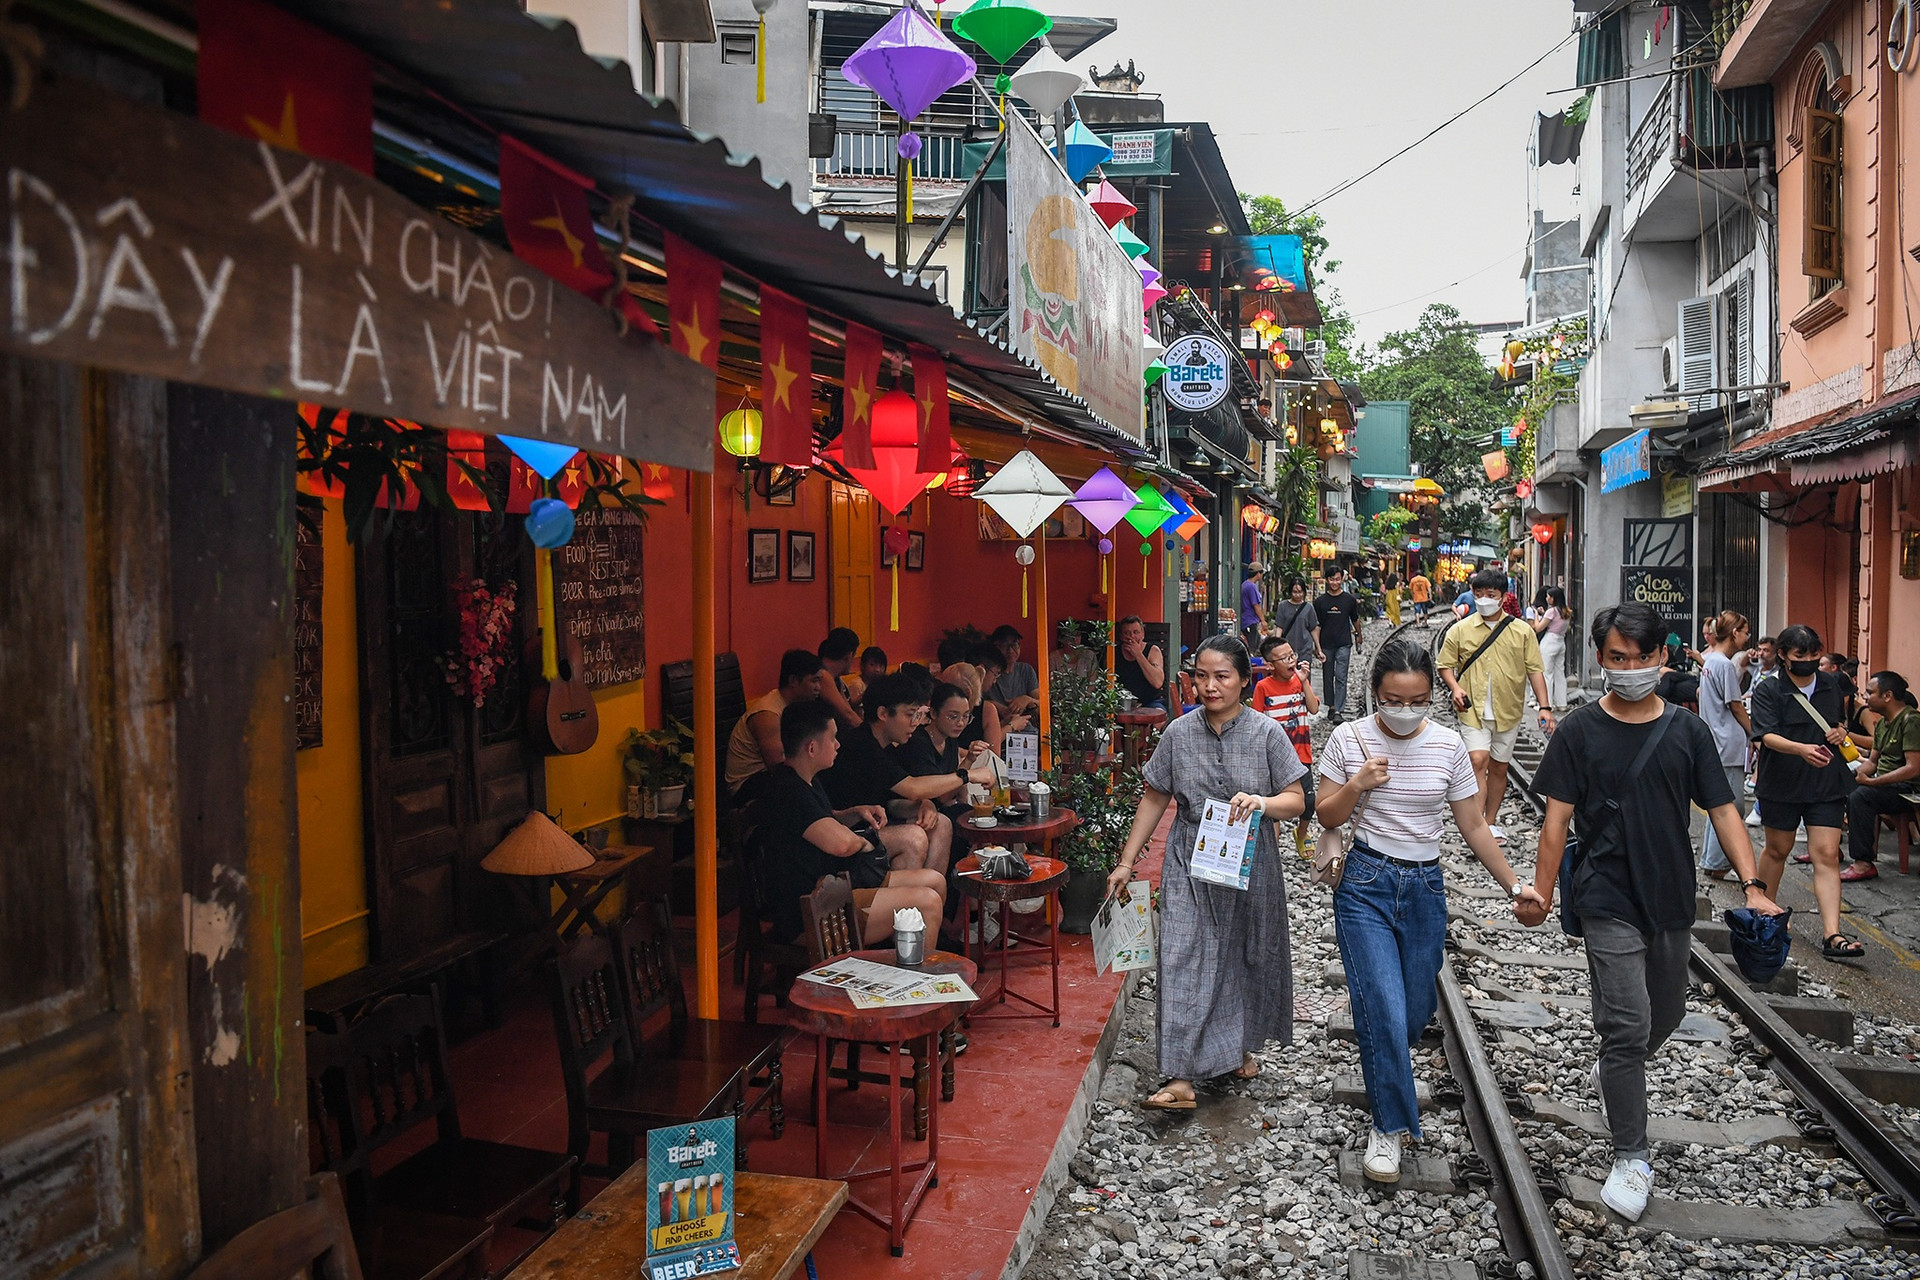 Phố cà phê đường tàu ở Hà Nội nhộn nhịp khách Tây, đông kín ngày cuối tuần - 10